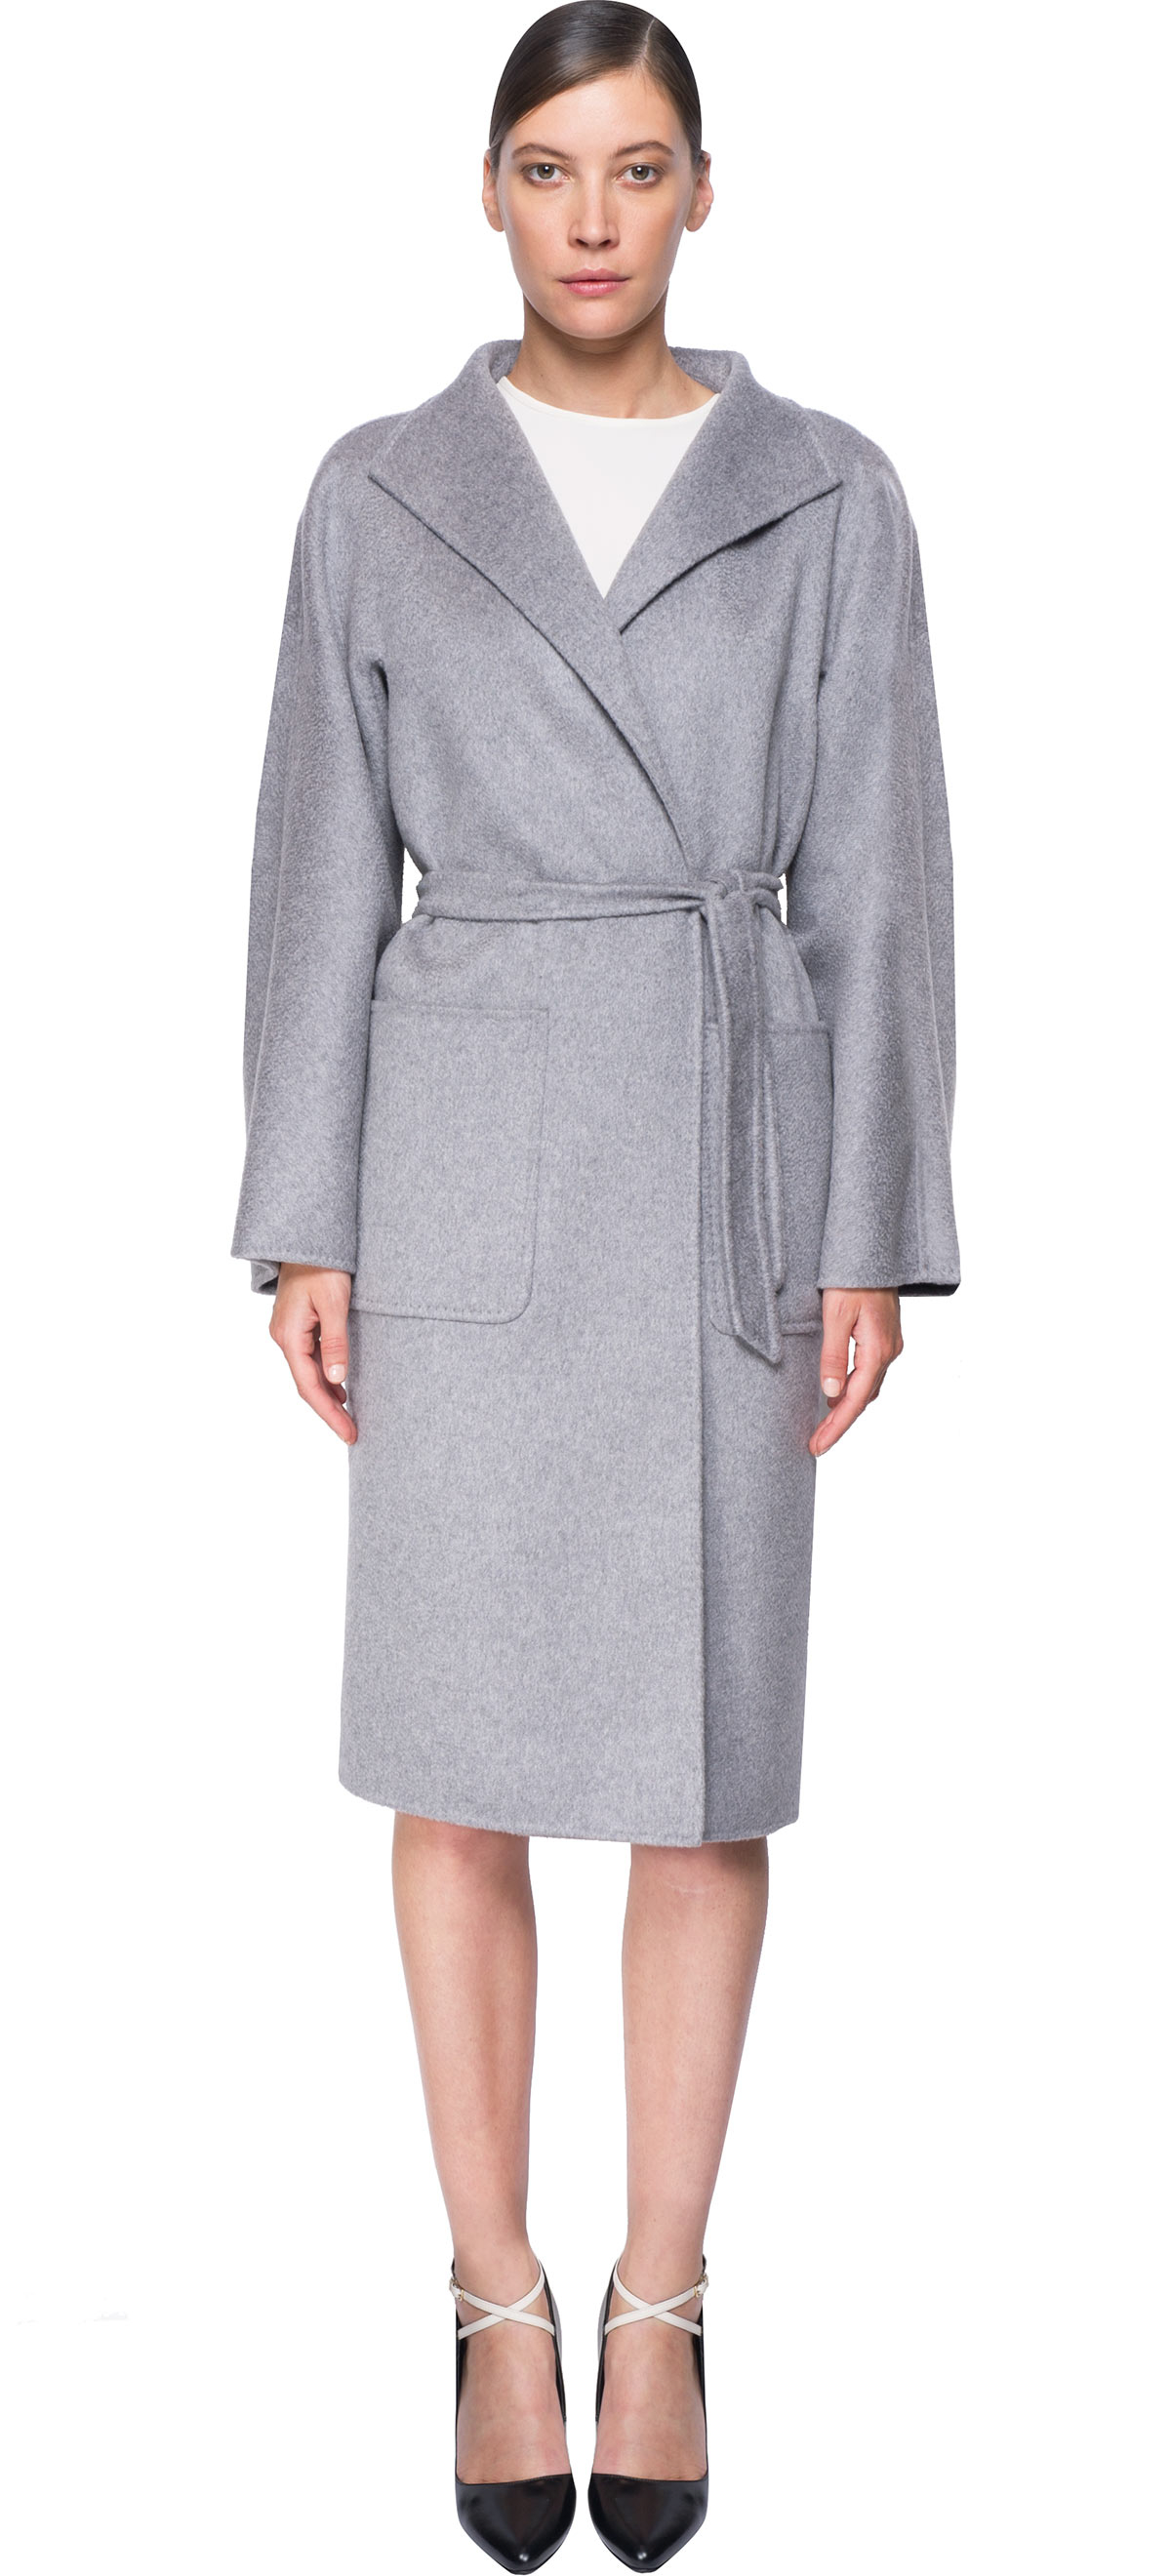 Max Mara 'lilia' Cashmere Coat in Gray - Lyst